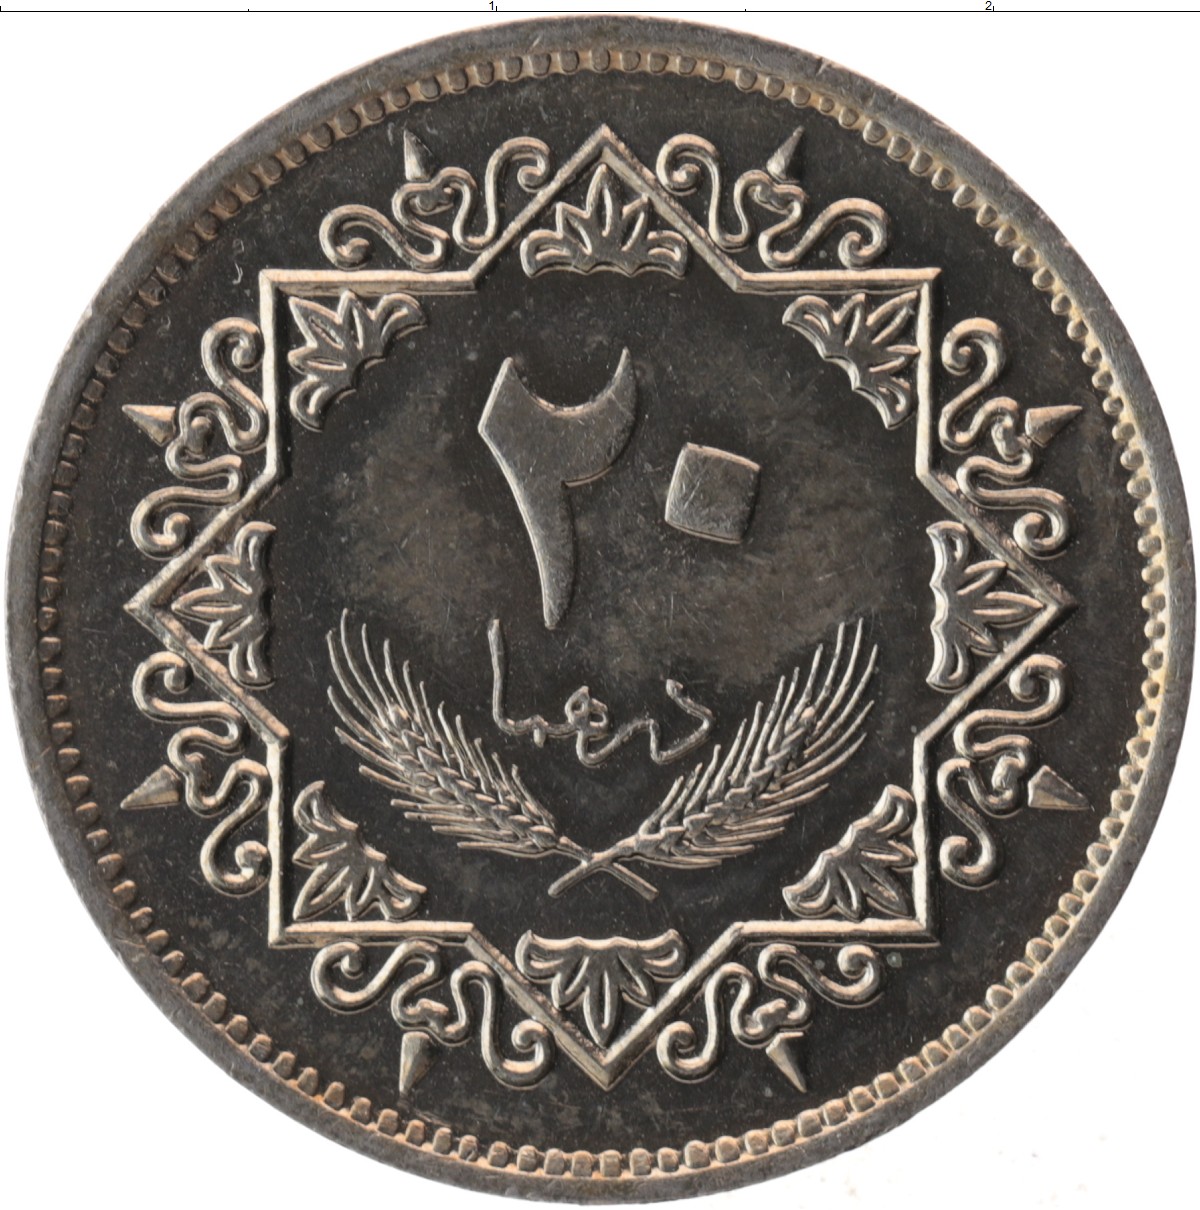 220 дирхам. Монеты Ливия дирхам. Монета Ливии 1 дирхам. 10 Дирхам монета. 20 Дирхам монета.